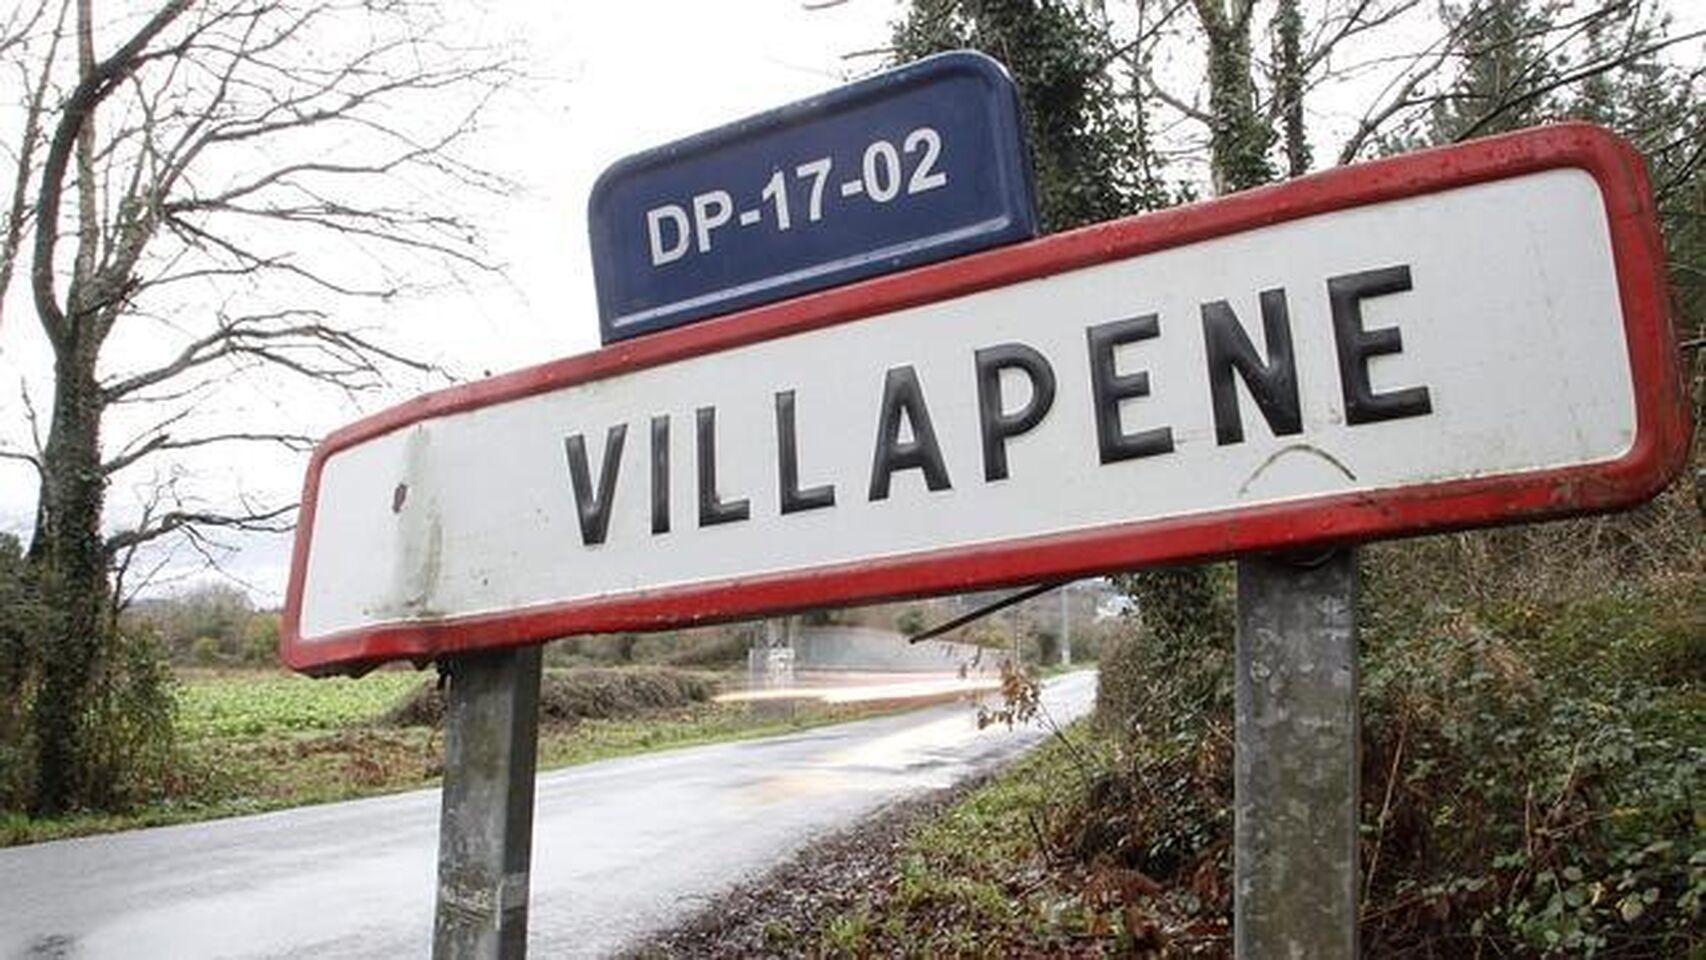 El cartel de entrada al municipio de Villapene.